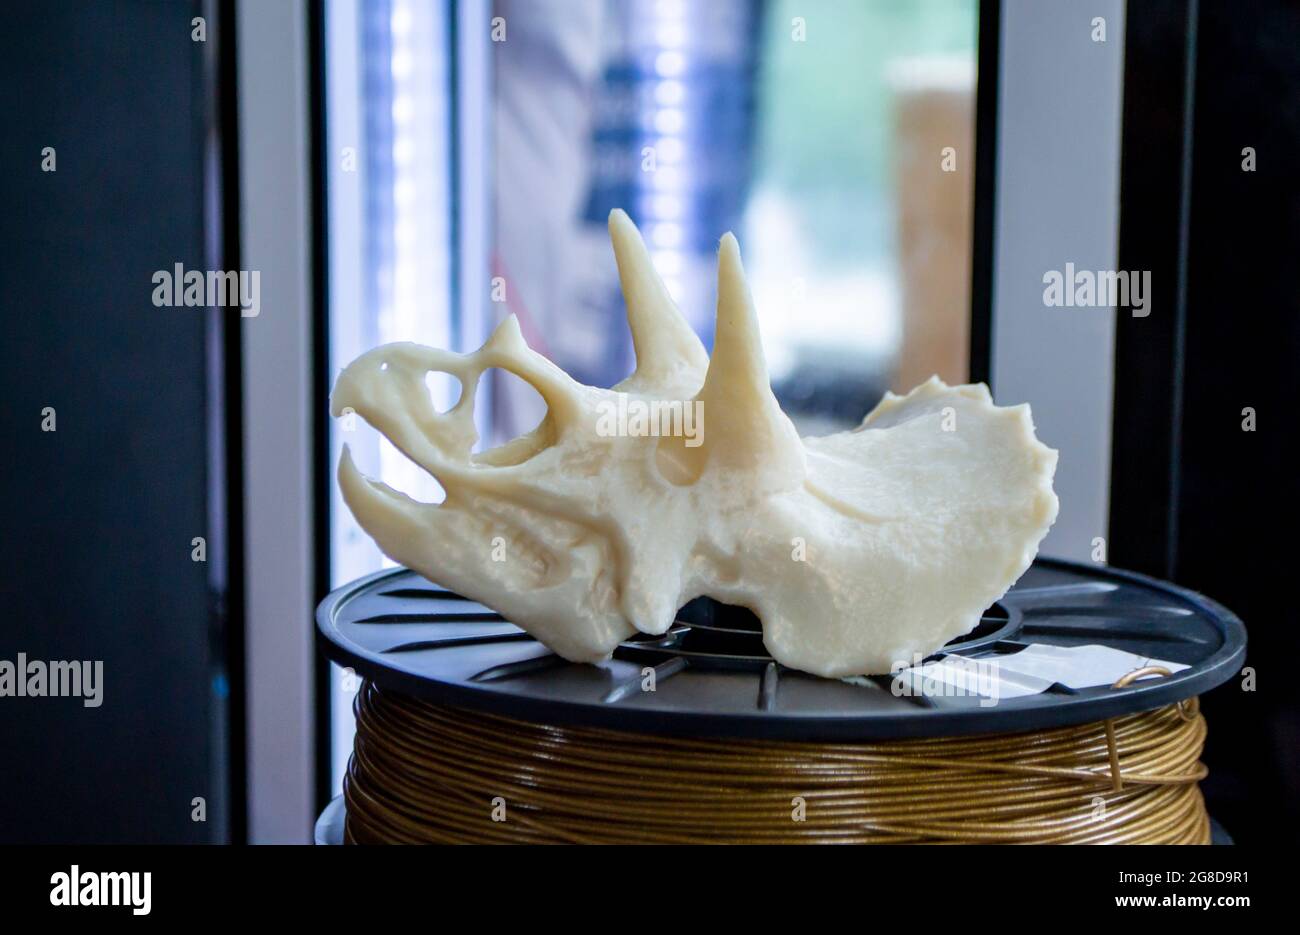 Modello 3D stampato su stampante 3d da plastica fusa a caldo. Foto Stock